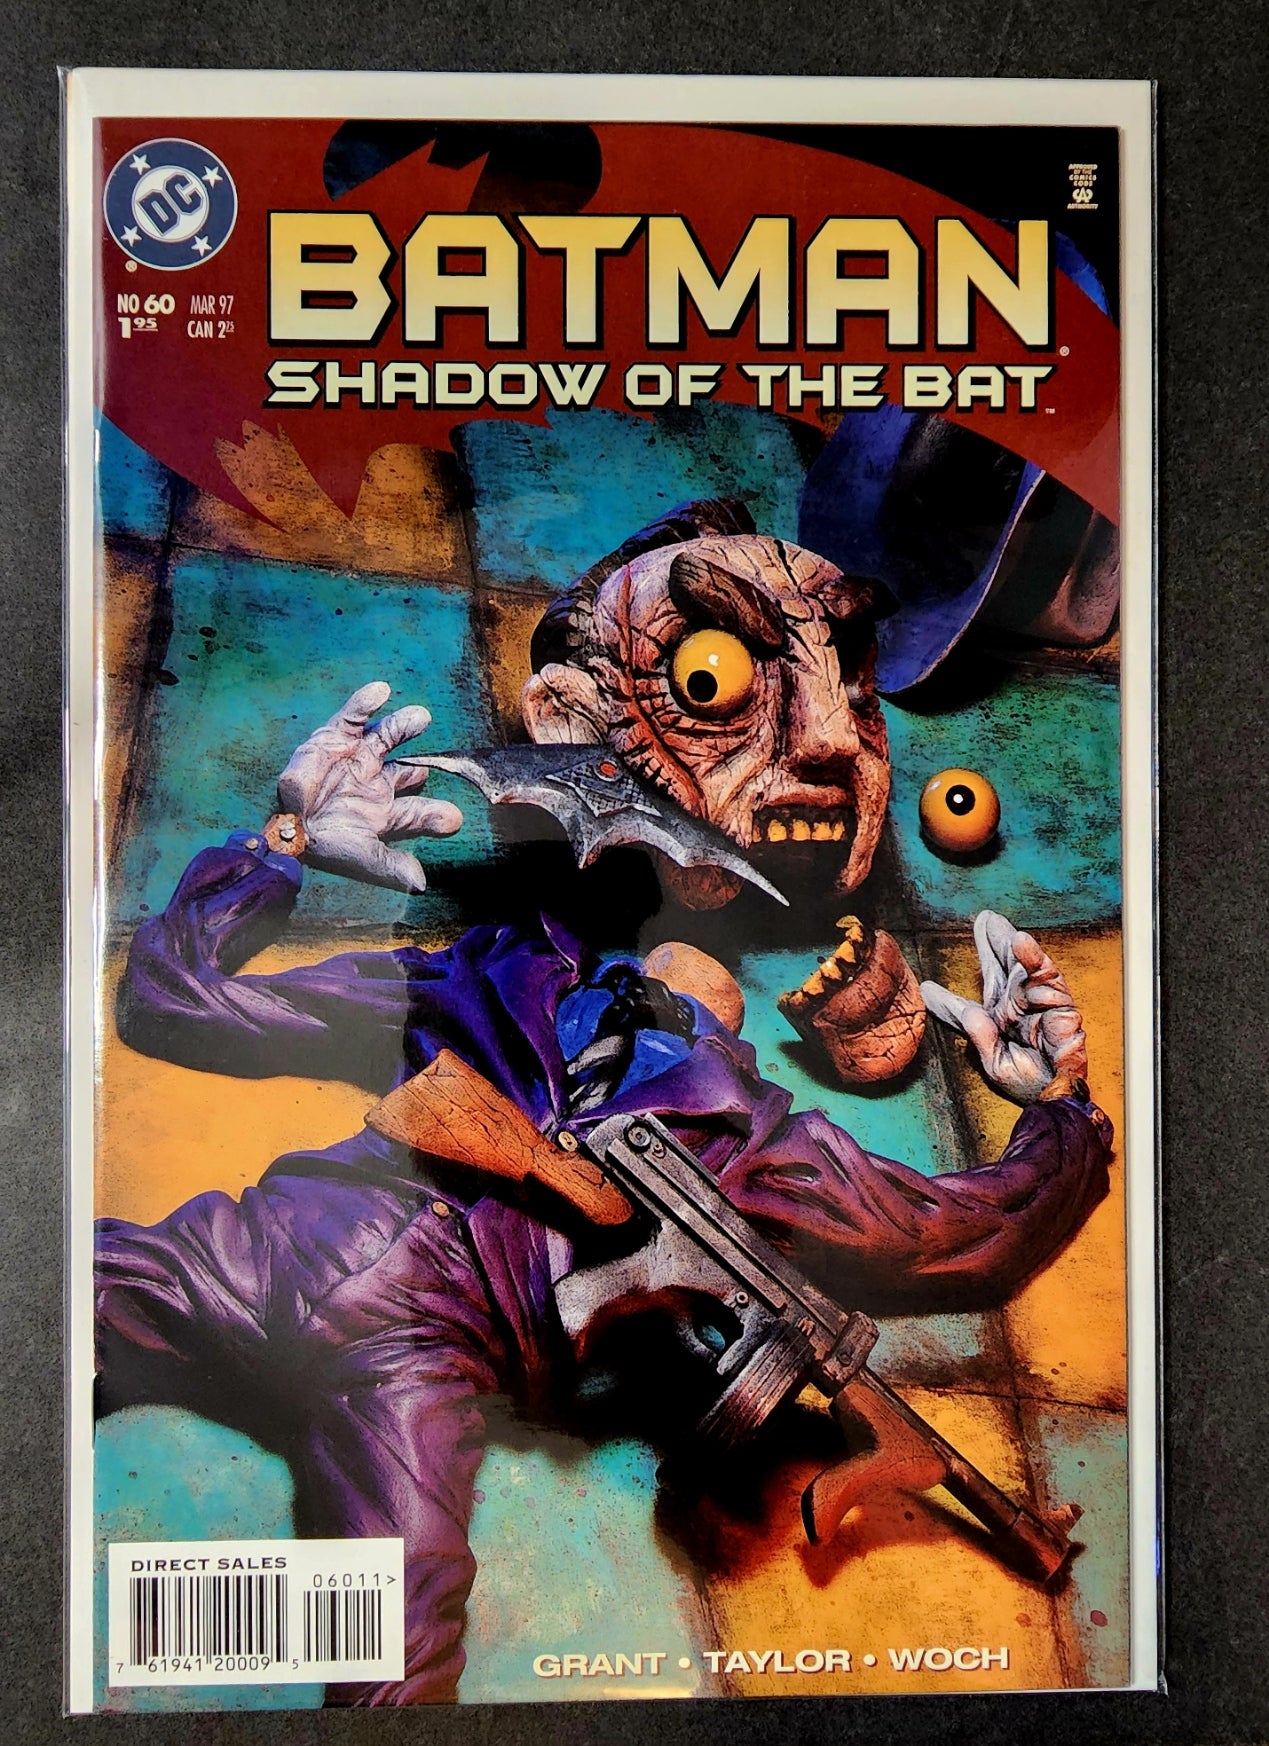 Batman: Shadow of the Bat #60 (VF)